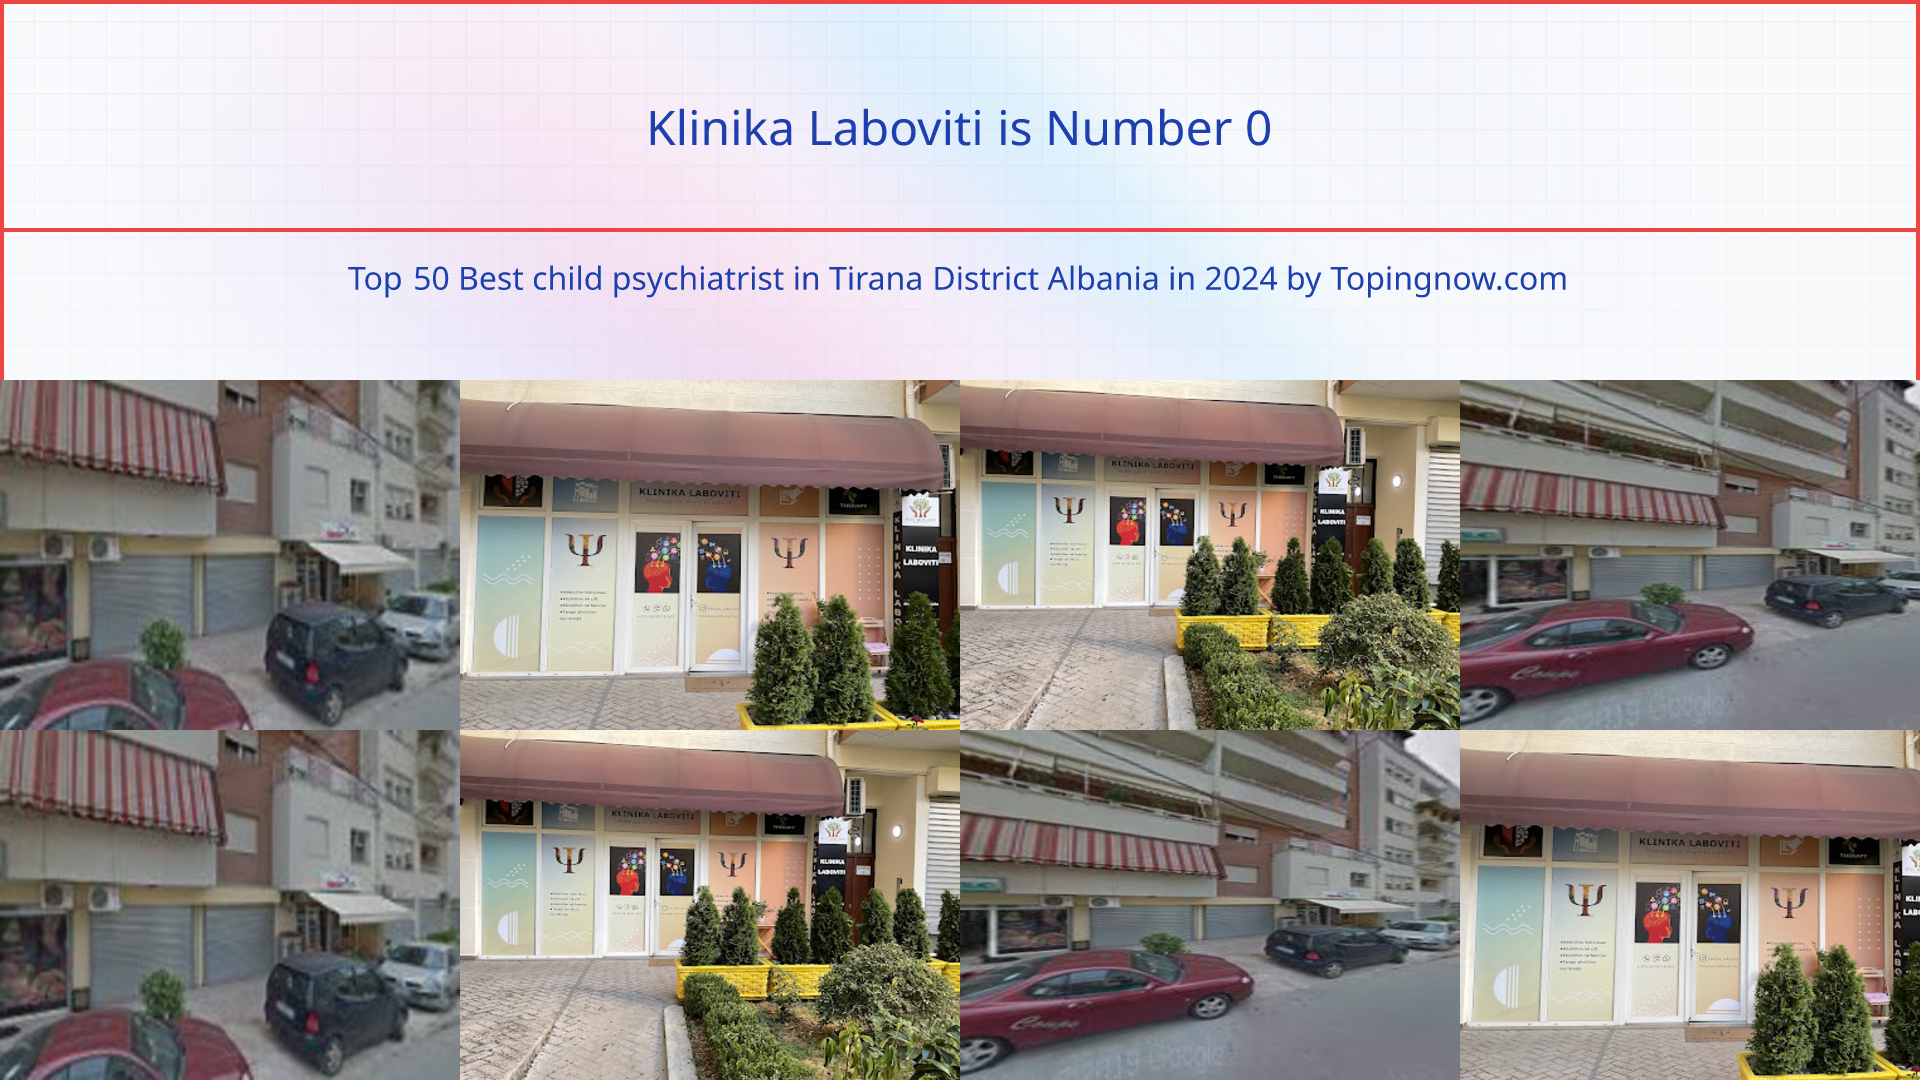 Klinika Laboviti: Top 50 Best child psychiatrist in Tirana District Albania in 2024